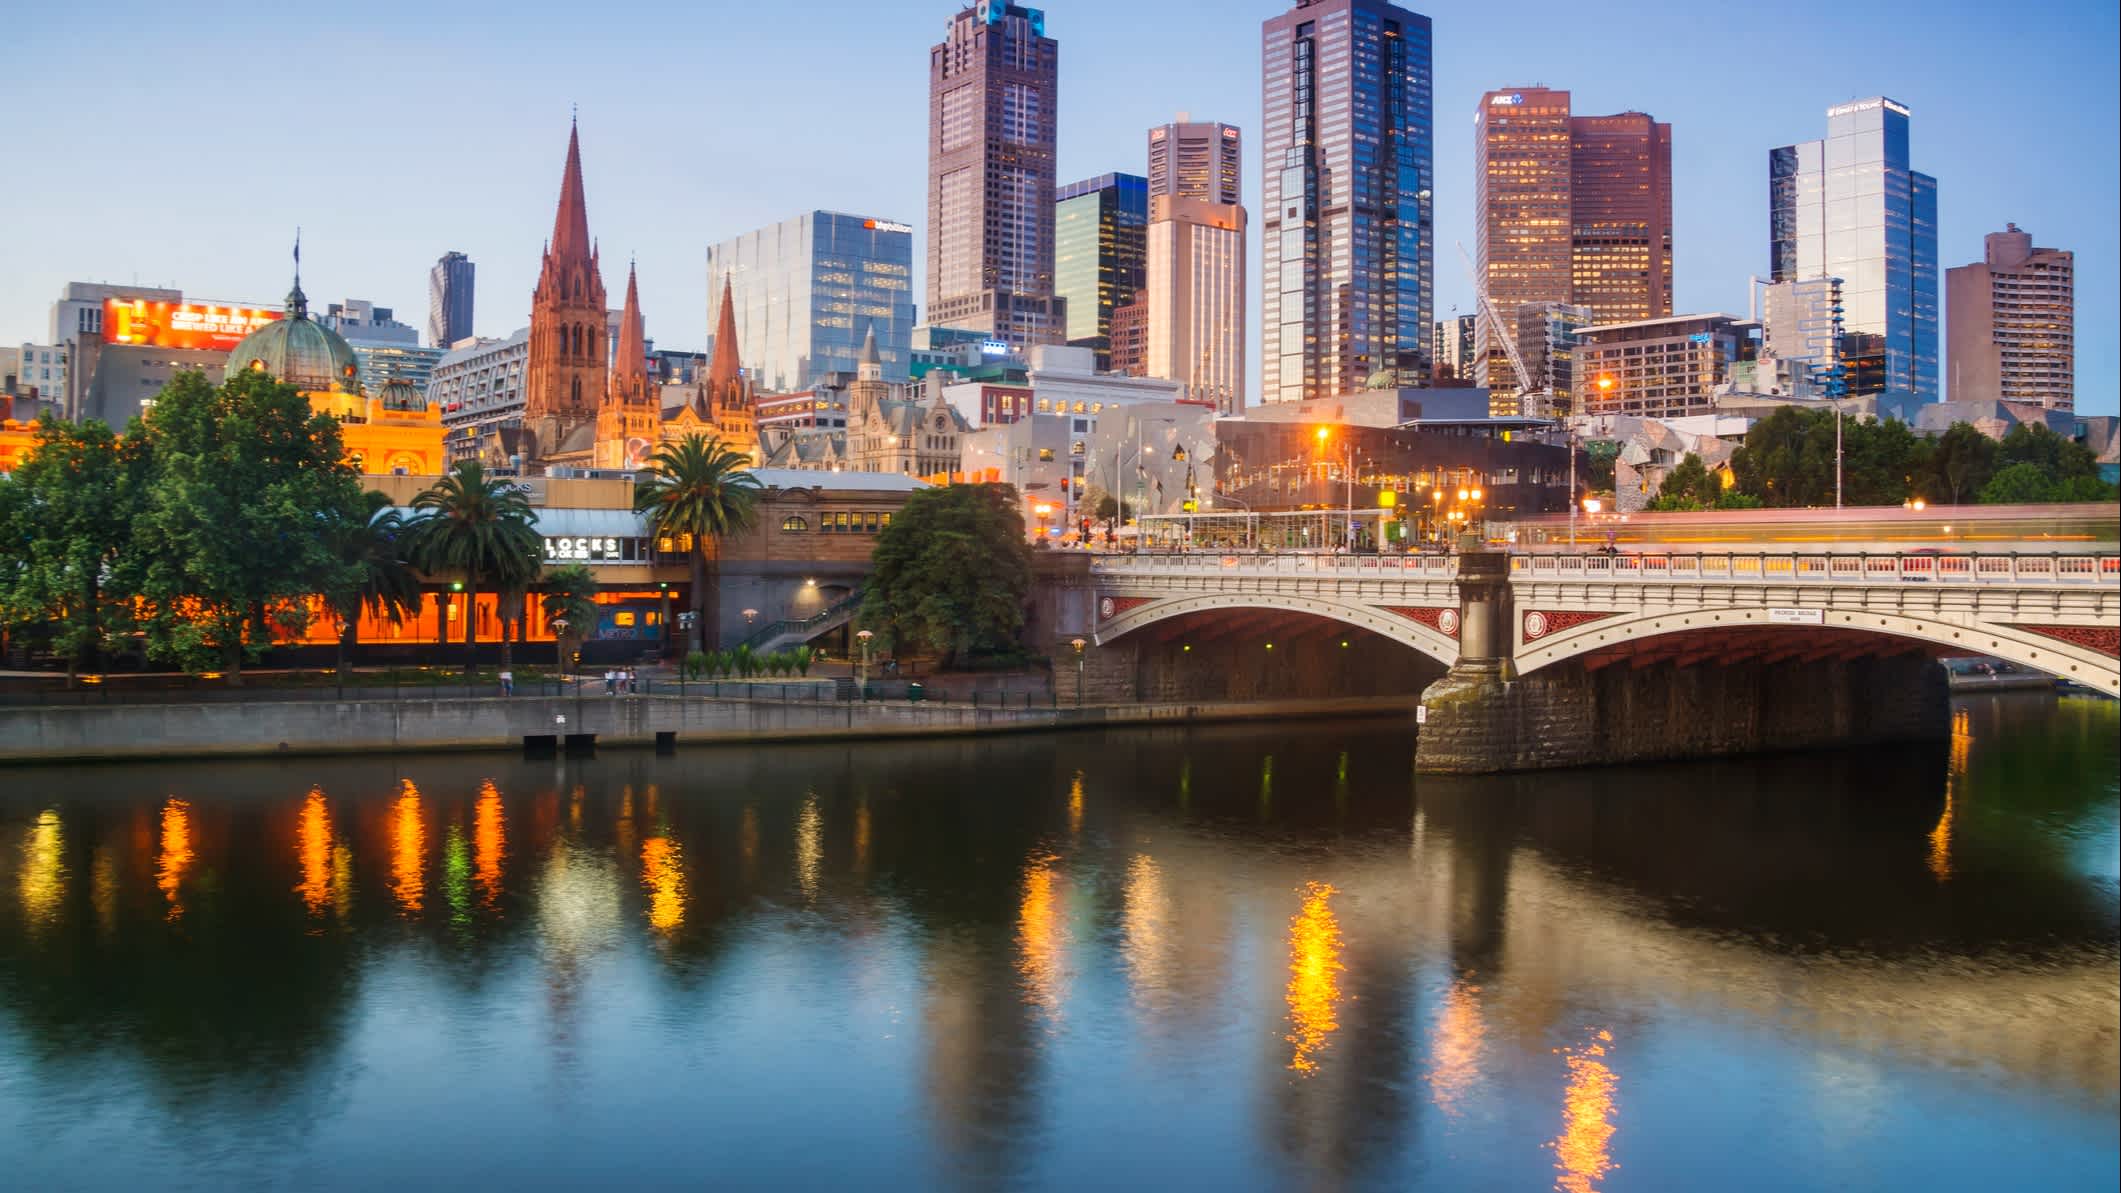 Vue sur un pont et des bâtiments illuminés de Melbourne au crépuscule, Australie.